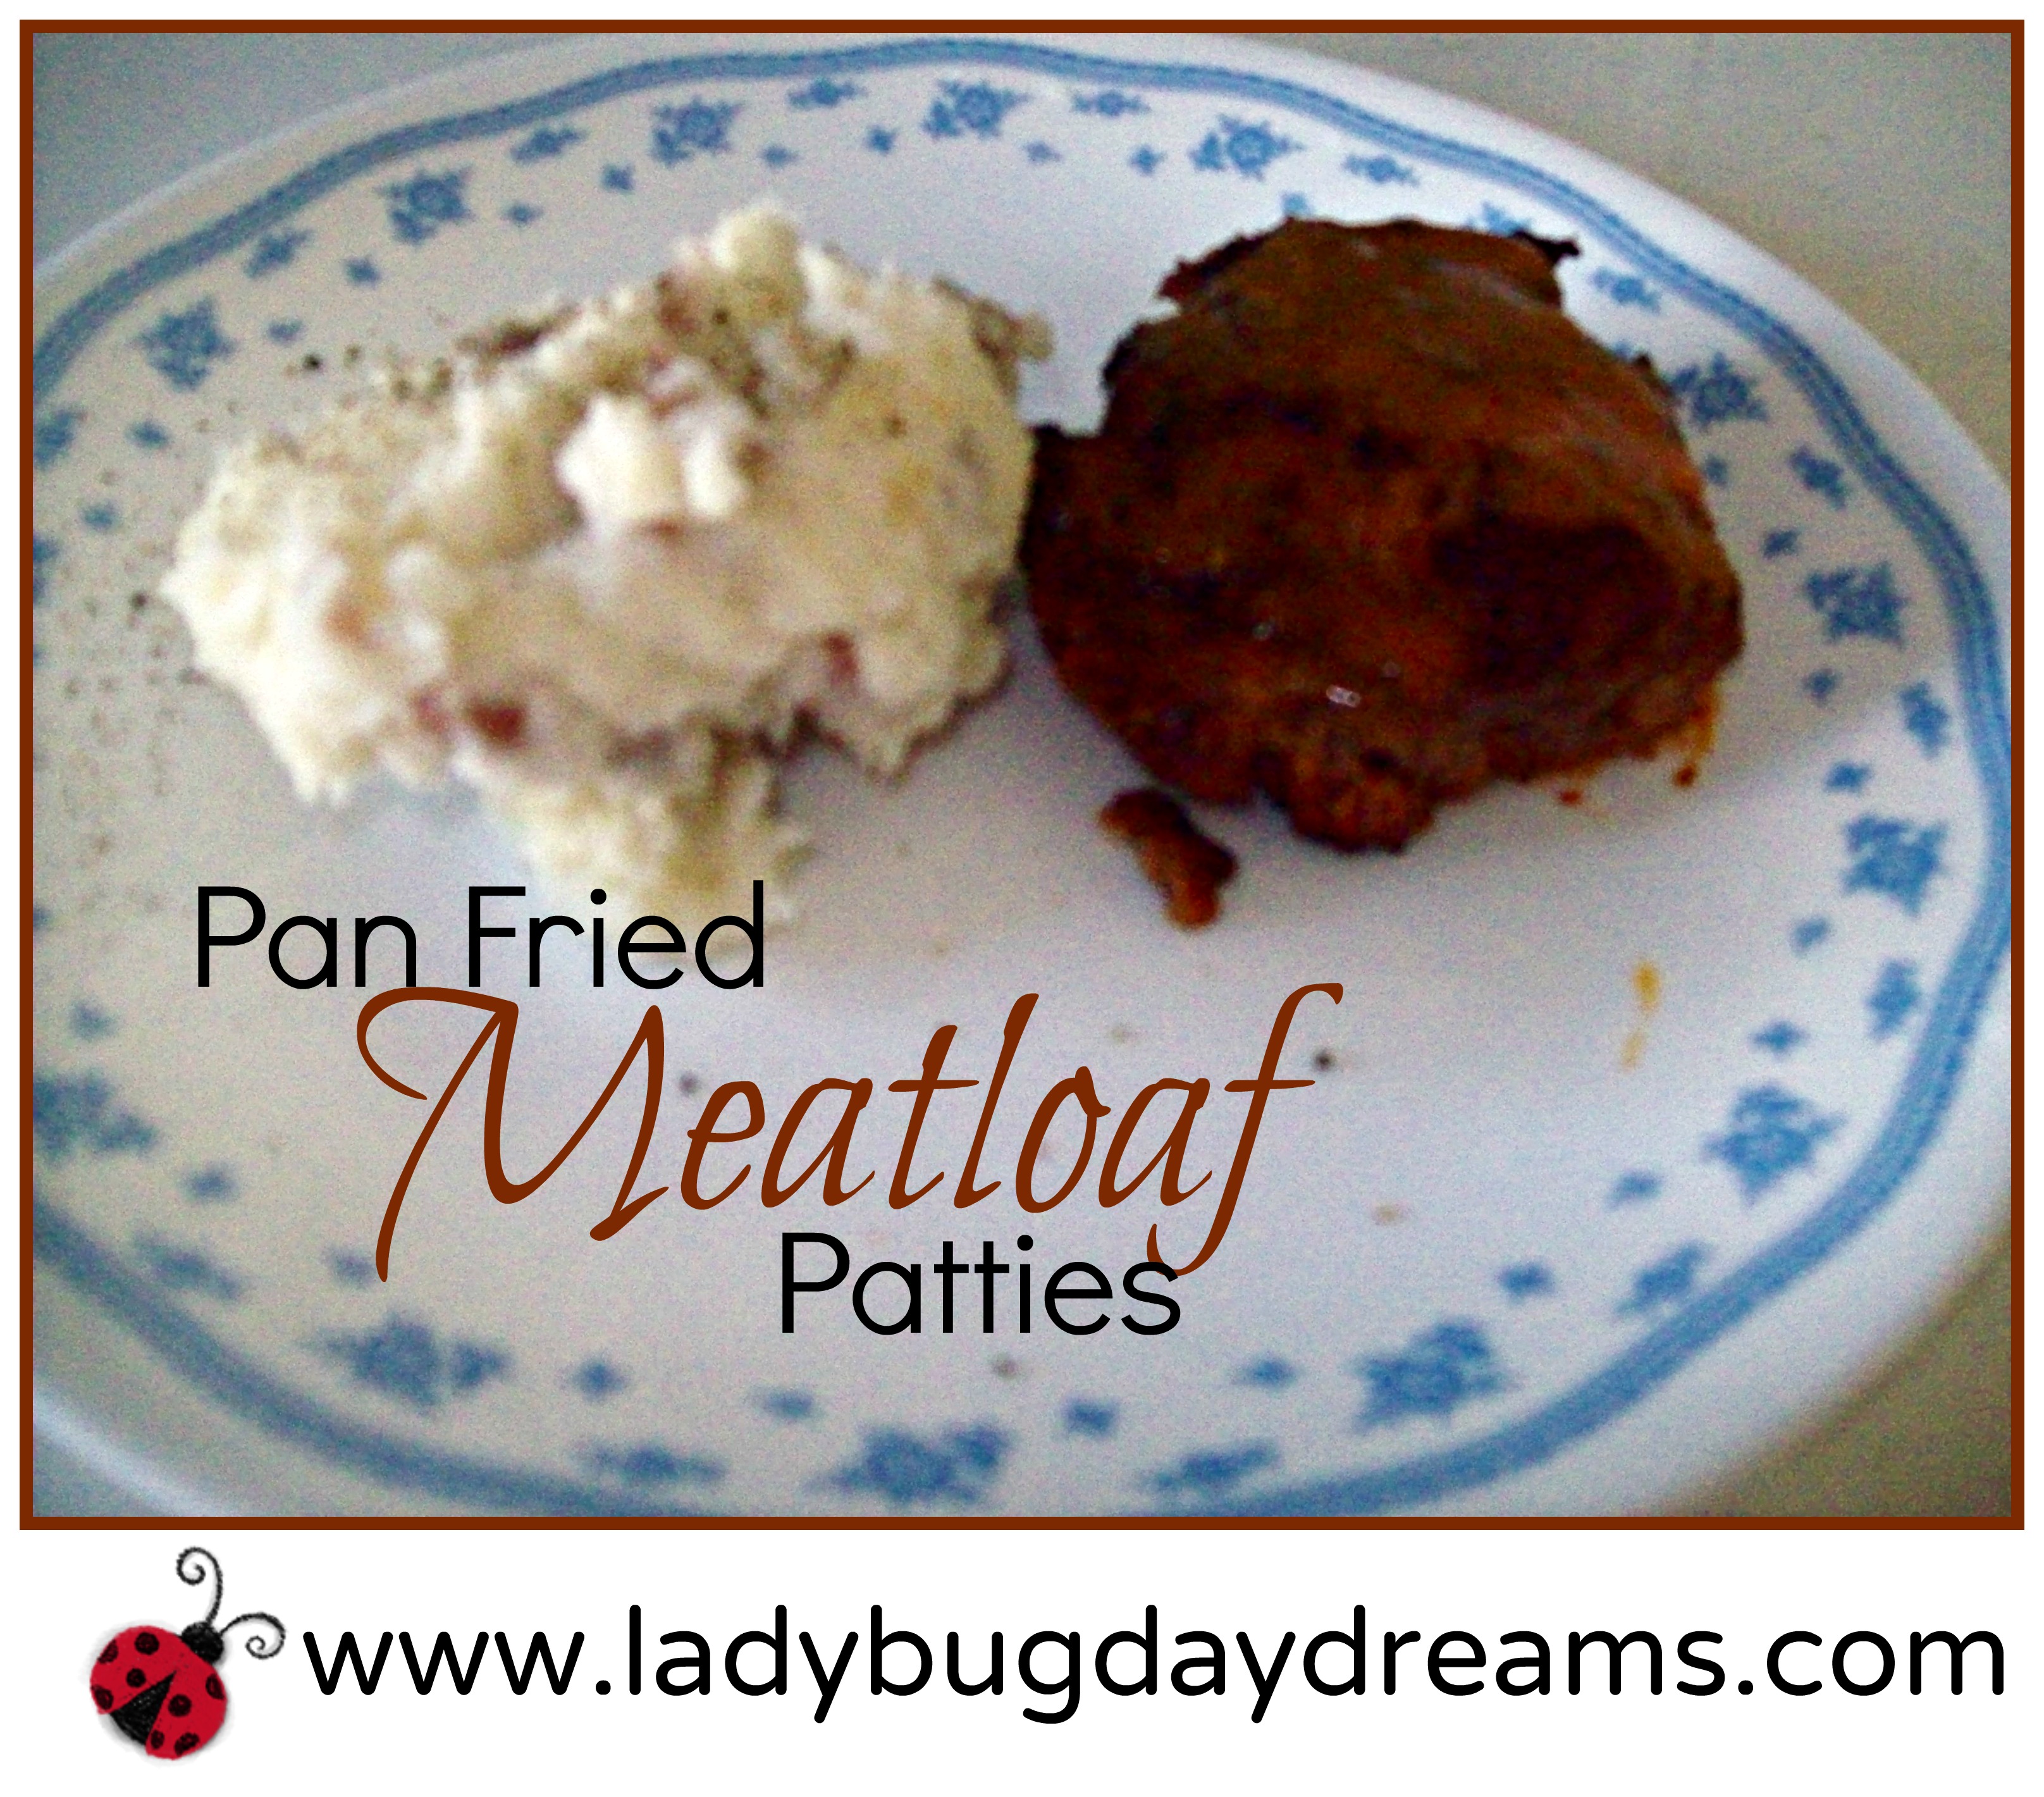 Pan Fried Meatloaf Patties recipe